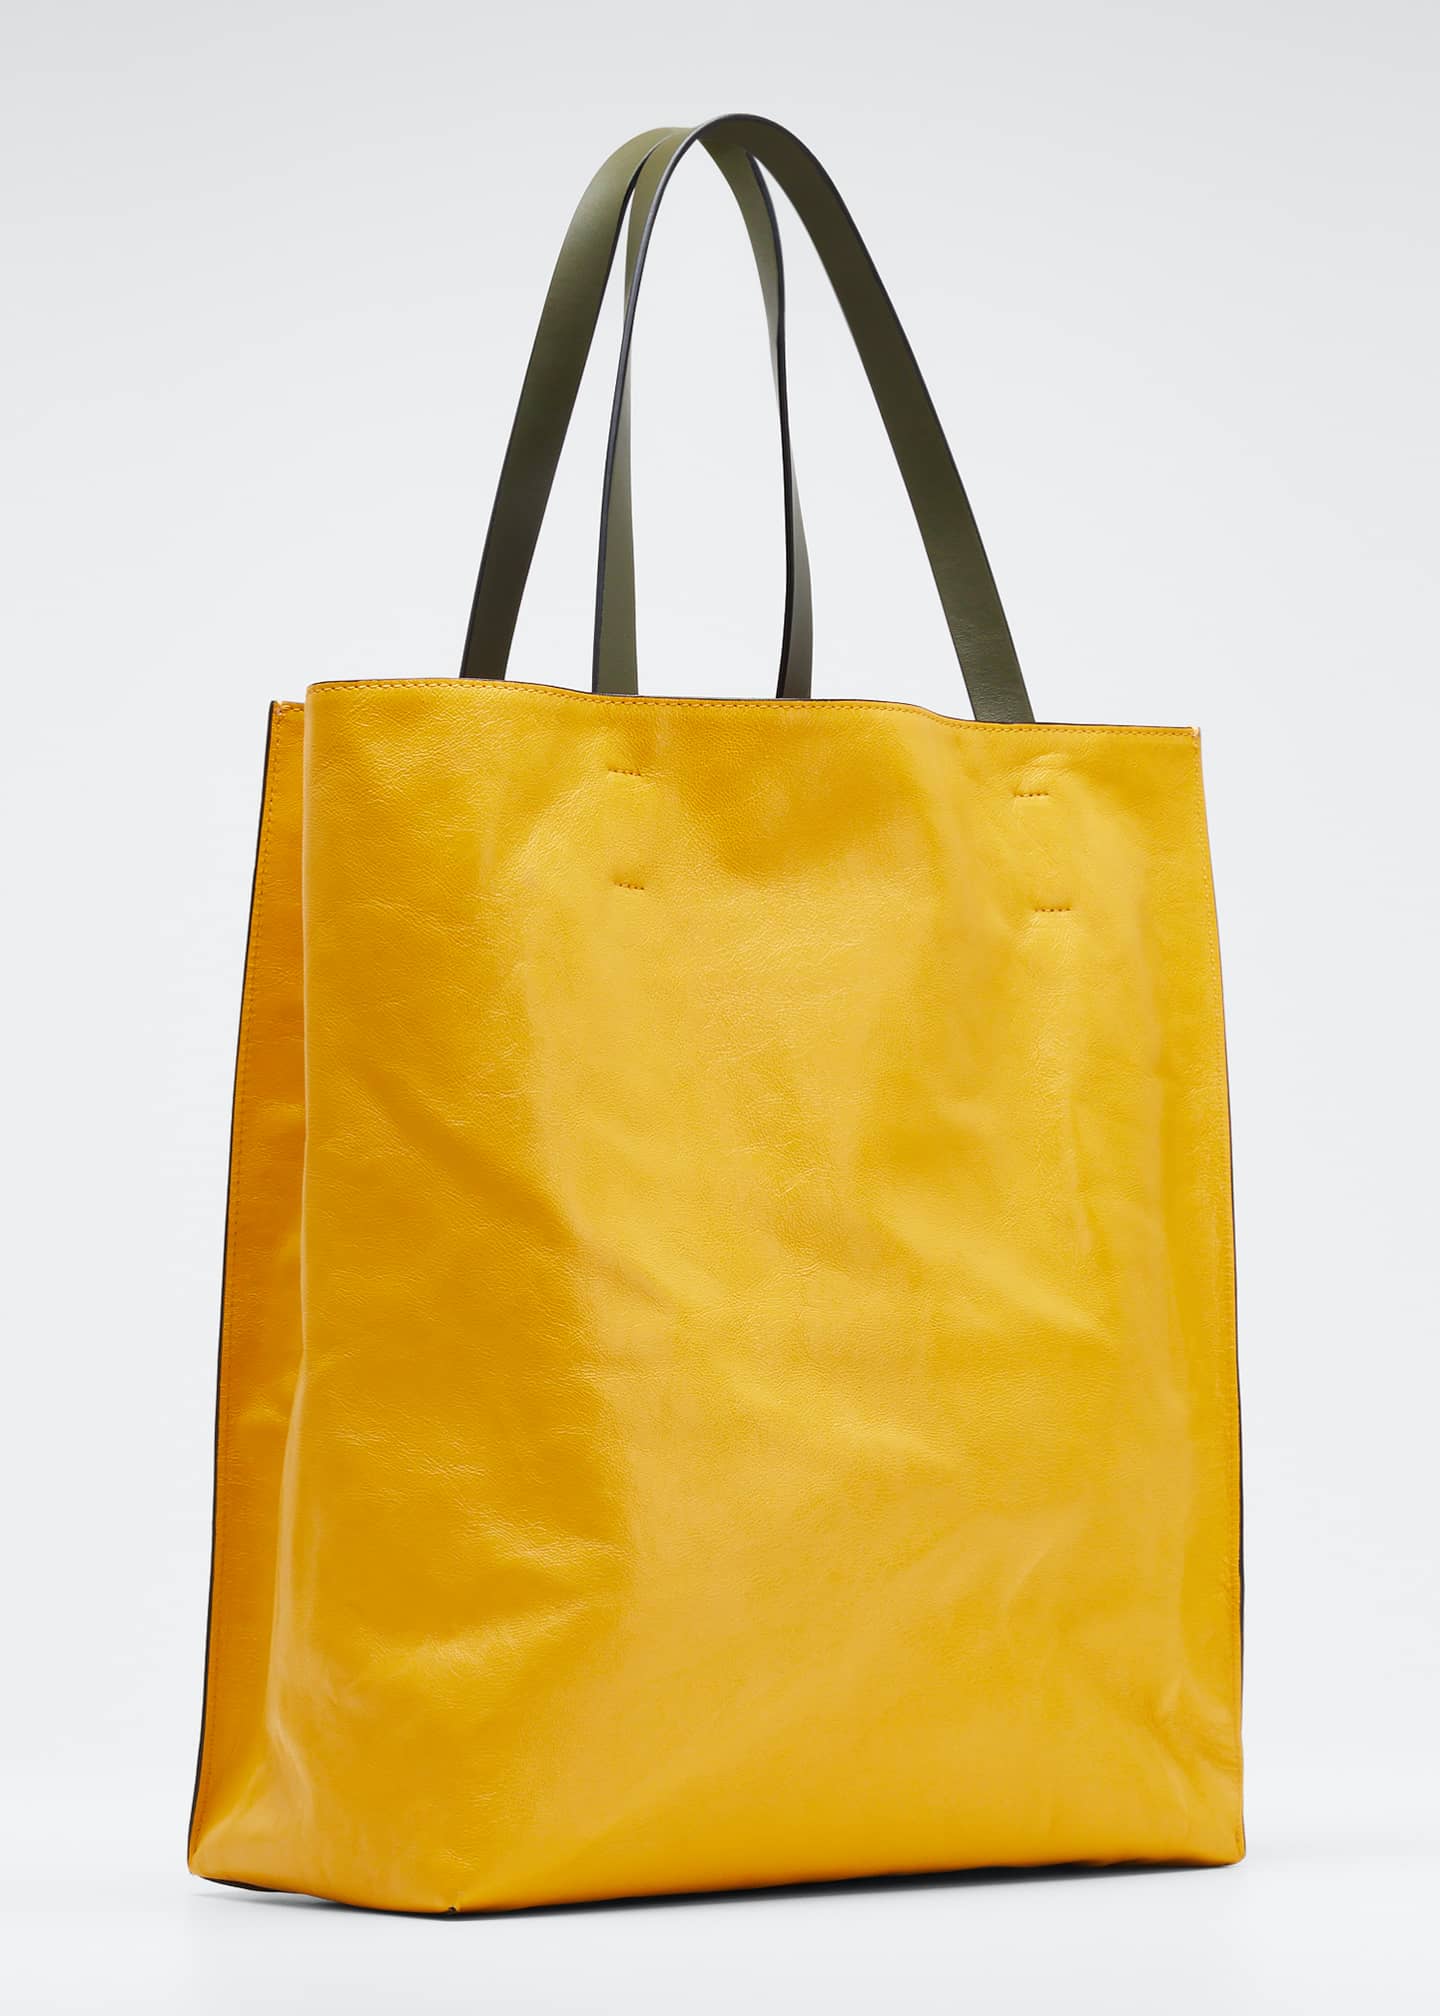 Marni Museo Soft Shopping Tote Bag - Bergdorf Goodman